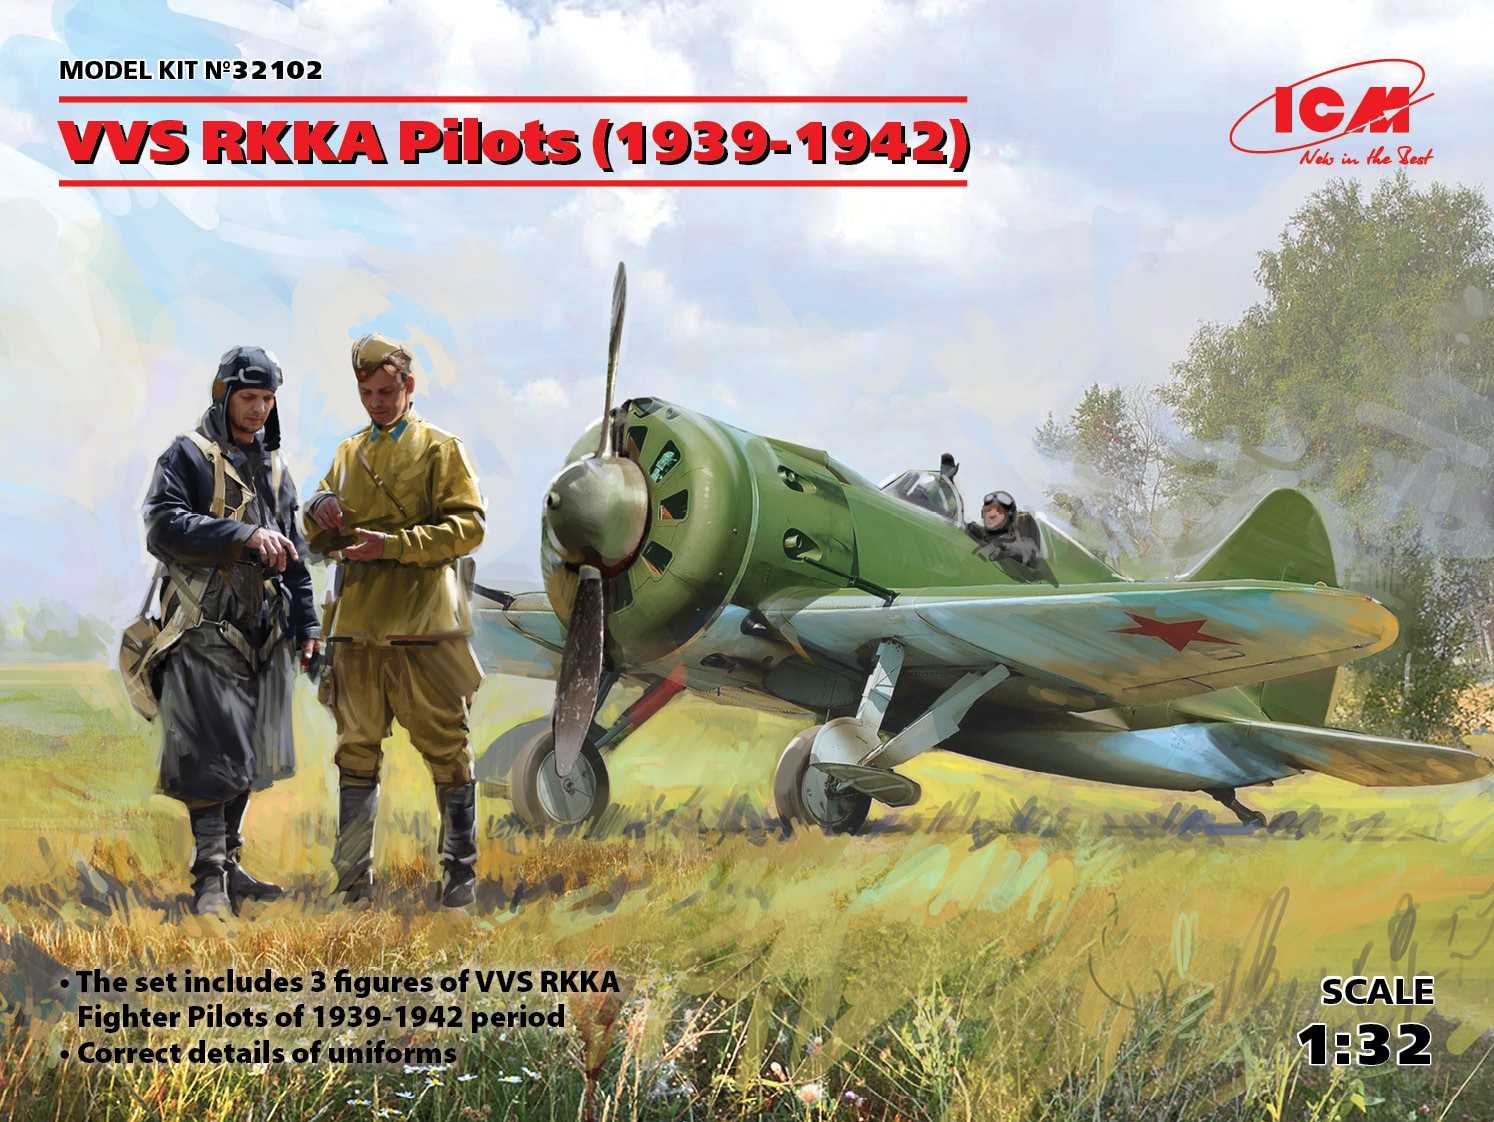 Figurines - VVS RKKA Pilots (1939-1942) (3 figures. 2 standing and 1 s